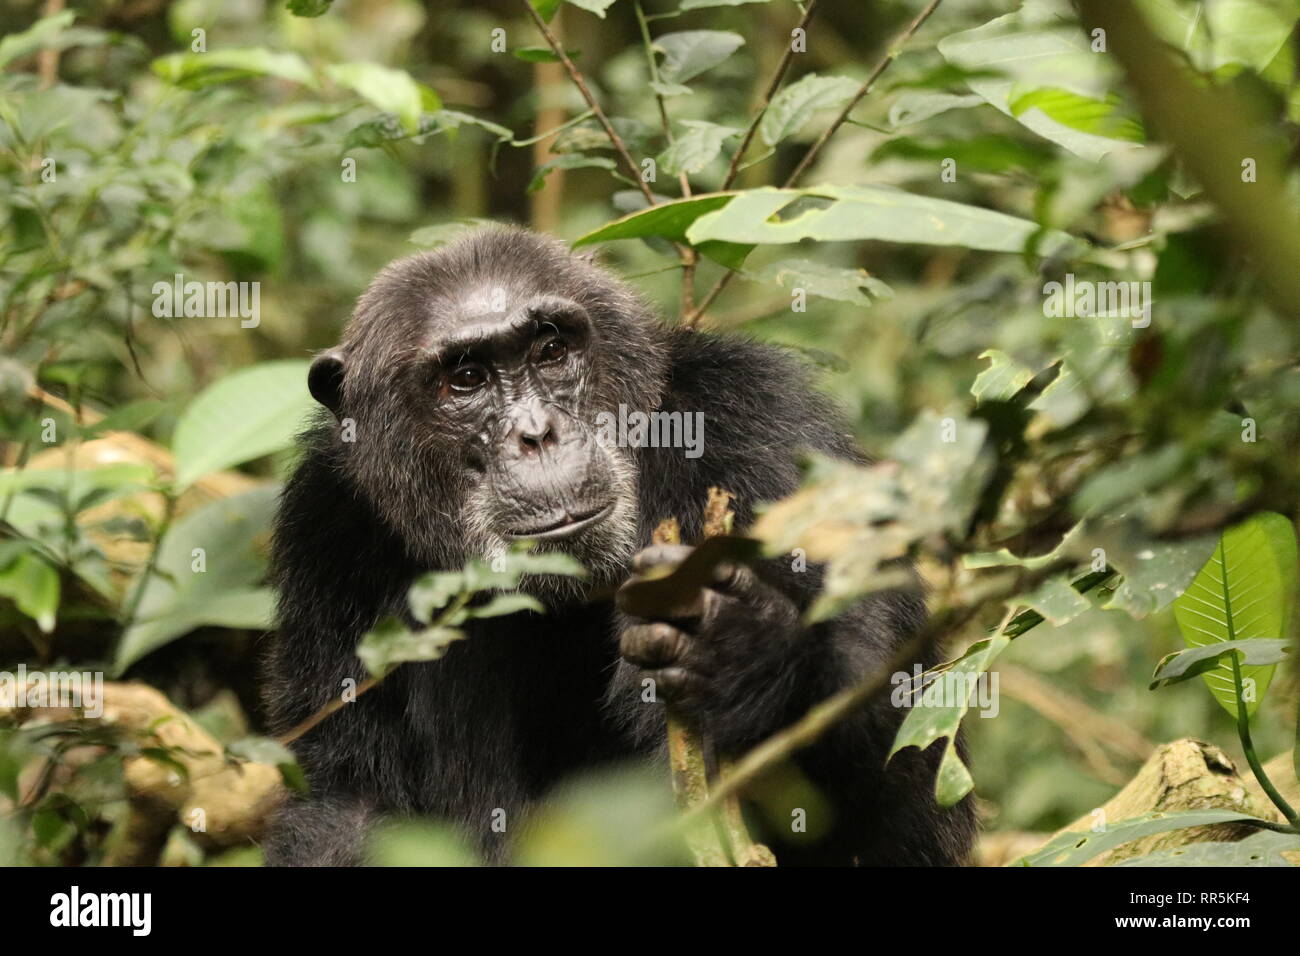 Wilde Schimpansen in freier Wildbahn, Foresta di Kibale Nationalpark in Uganda (Ostafrika) bei einer Wanderung durch den Wald, Heimat der Schimpansen Foto Stock